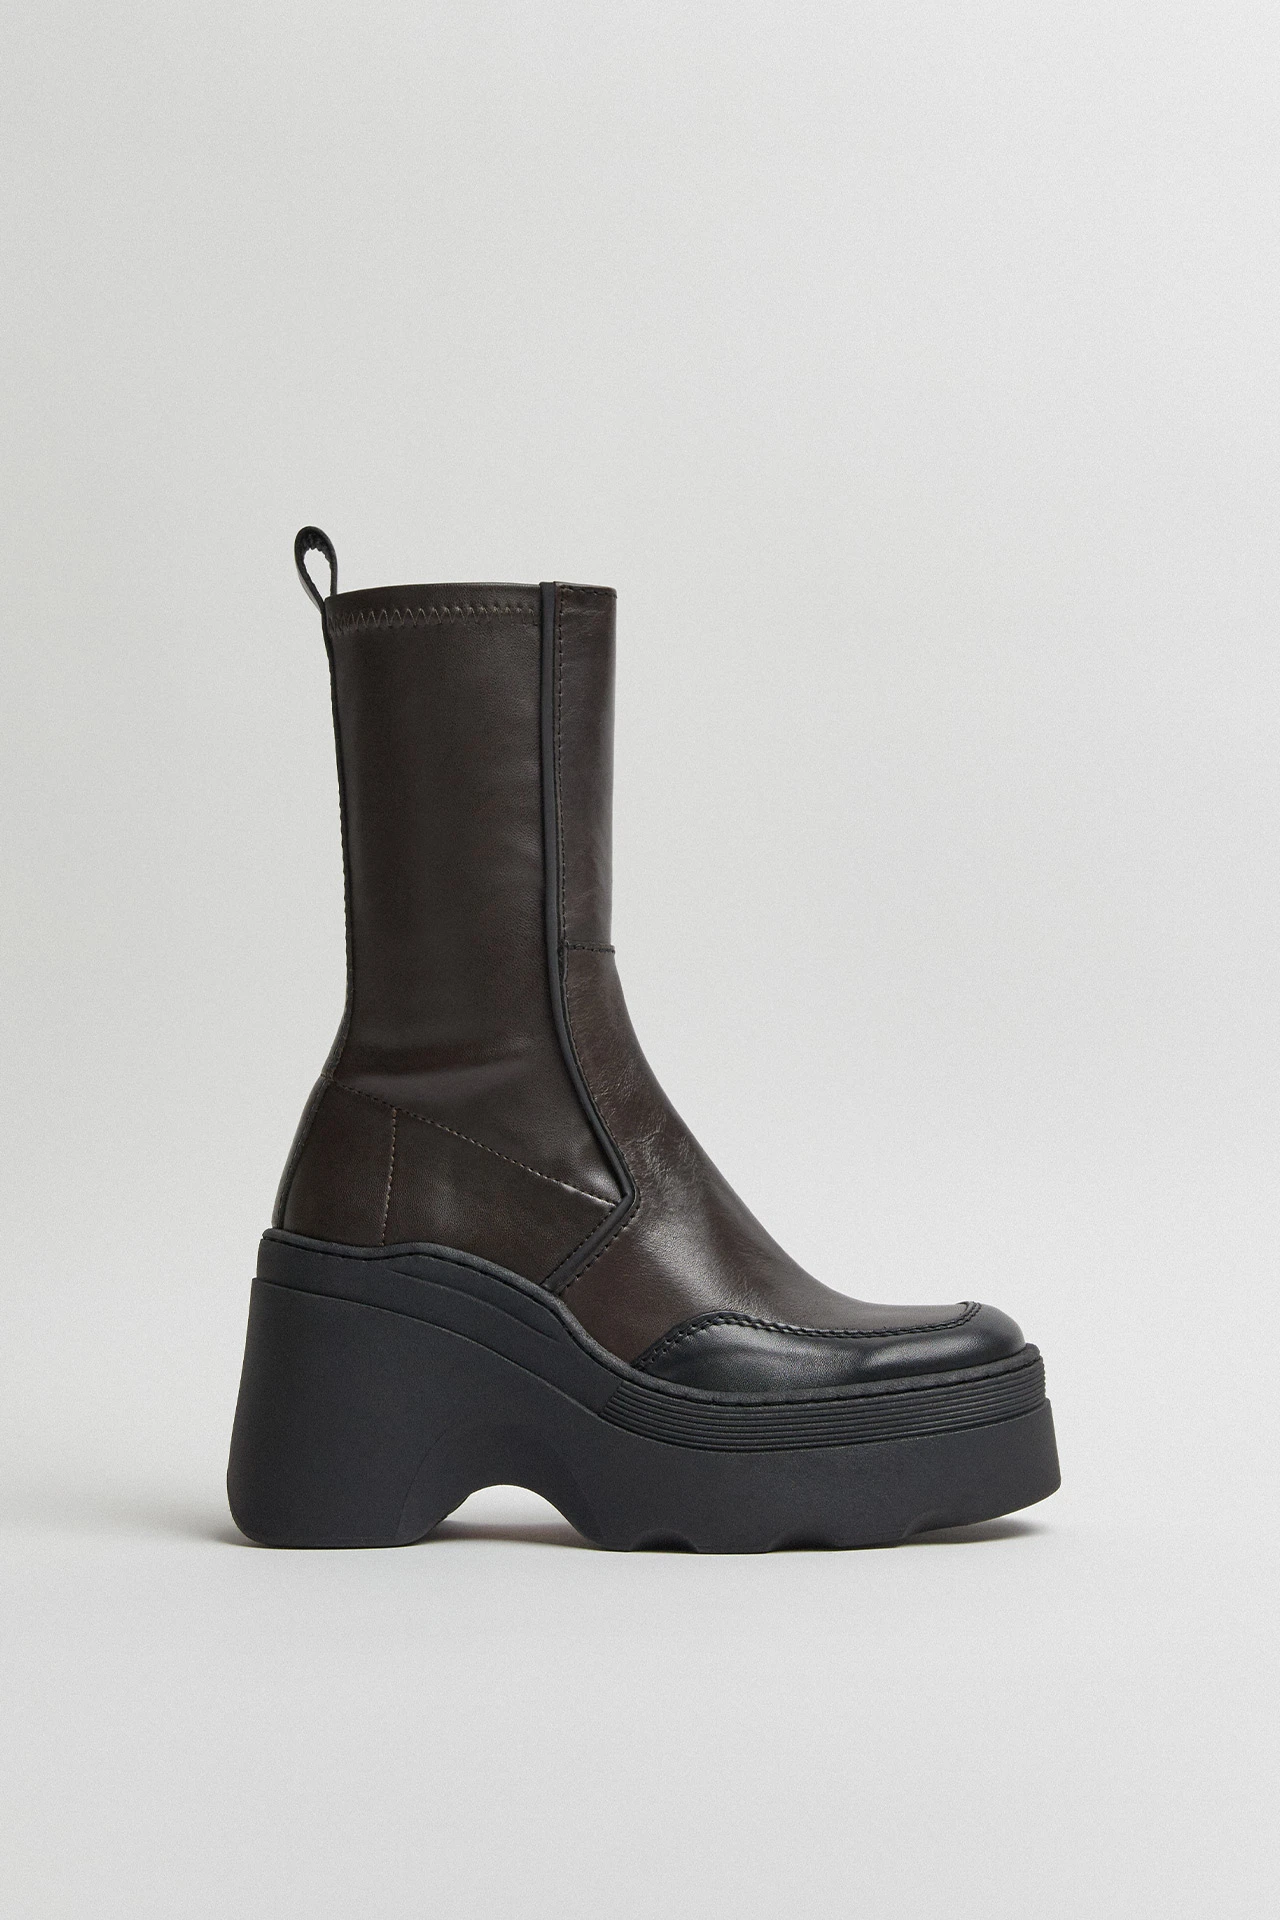 E8-deandra-brown-boots-01